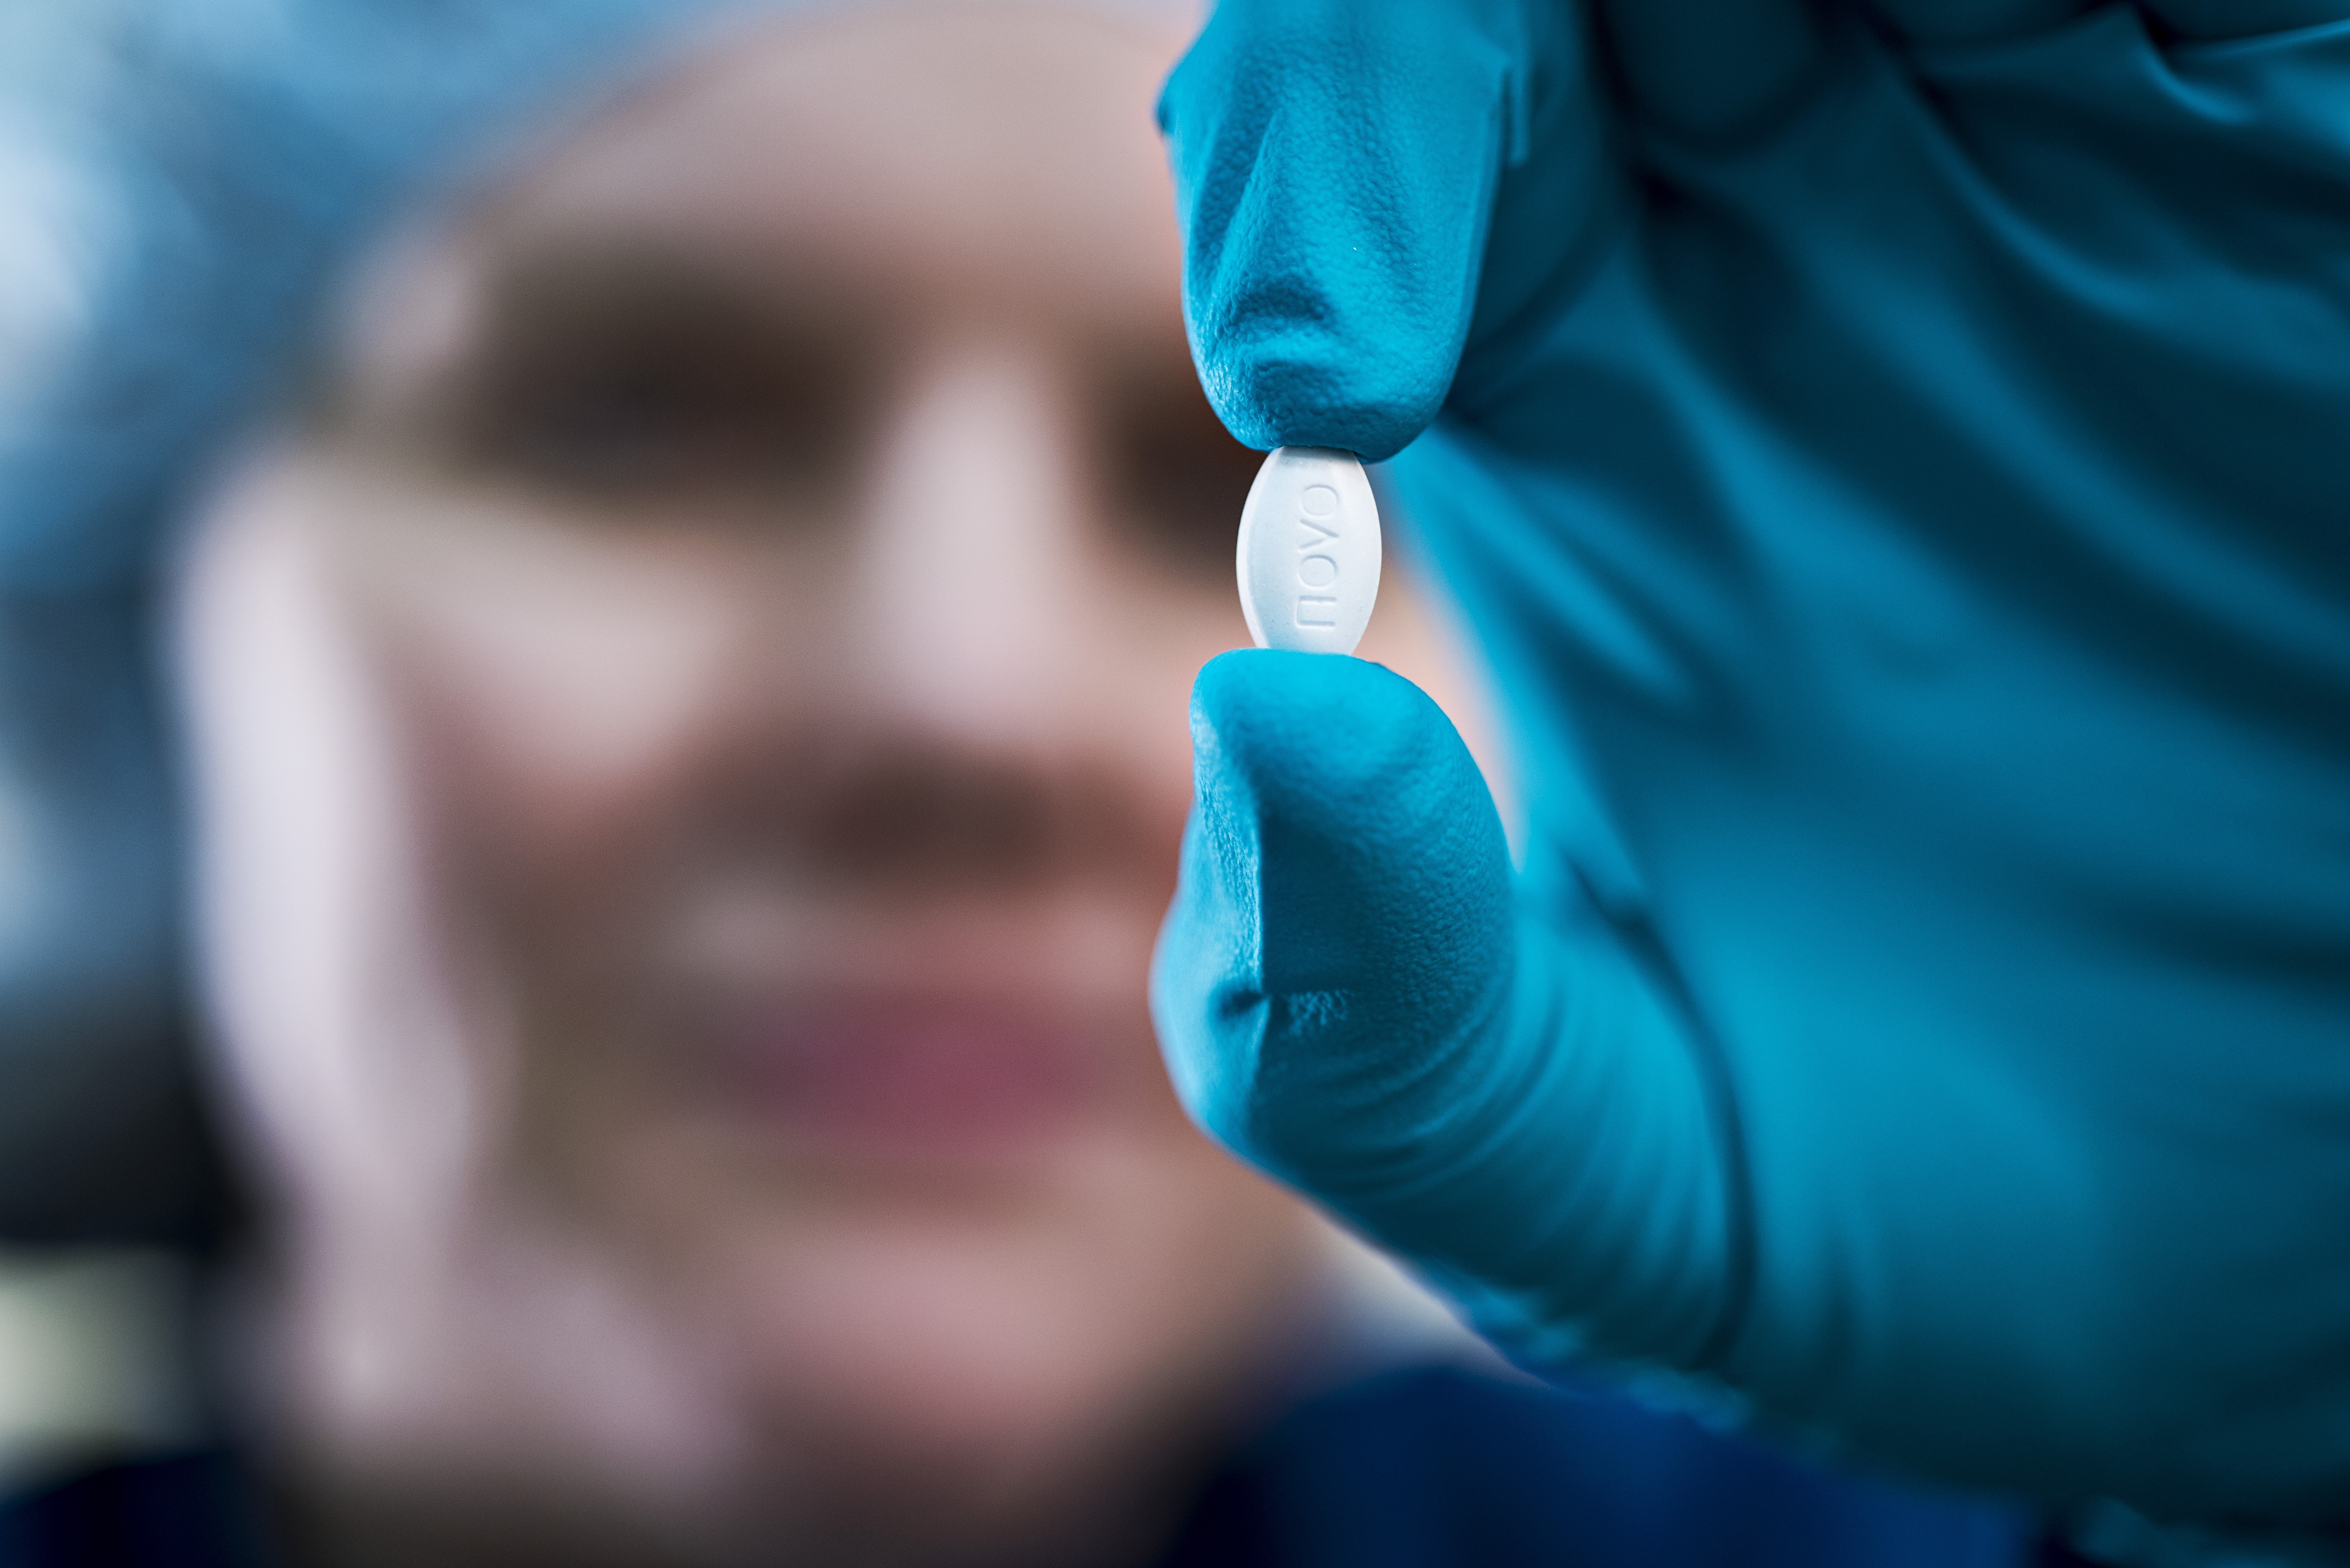 Semaglutide in a pill